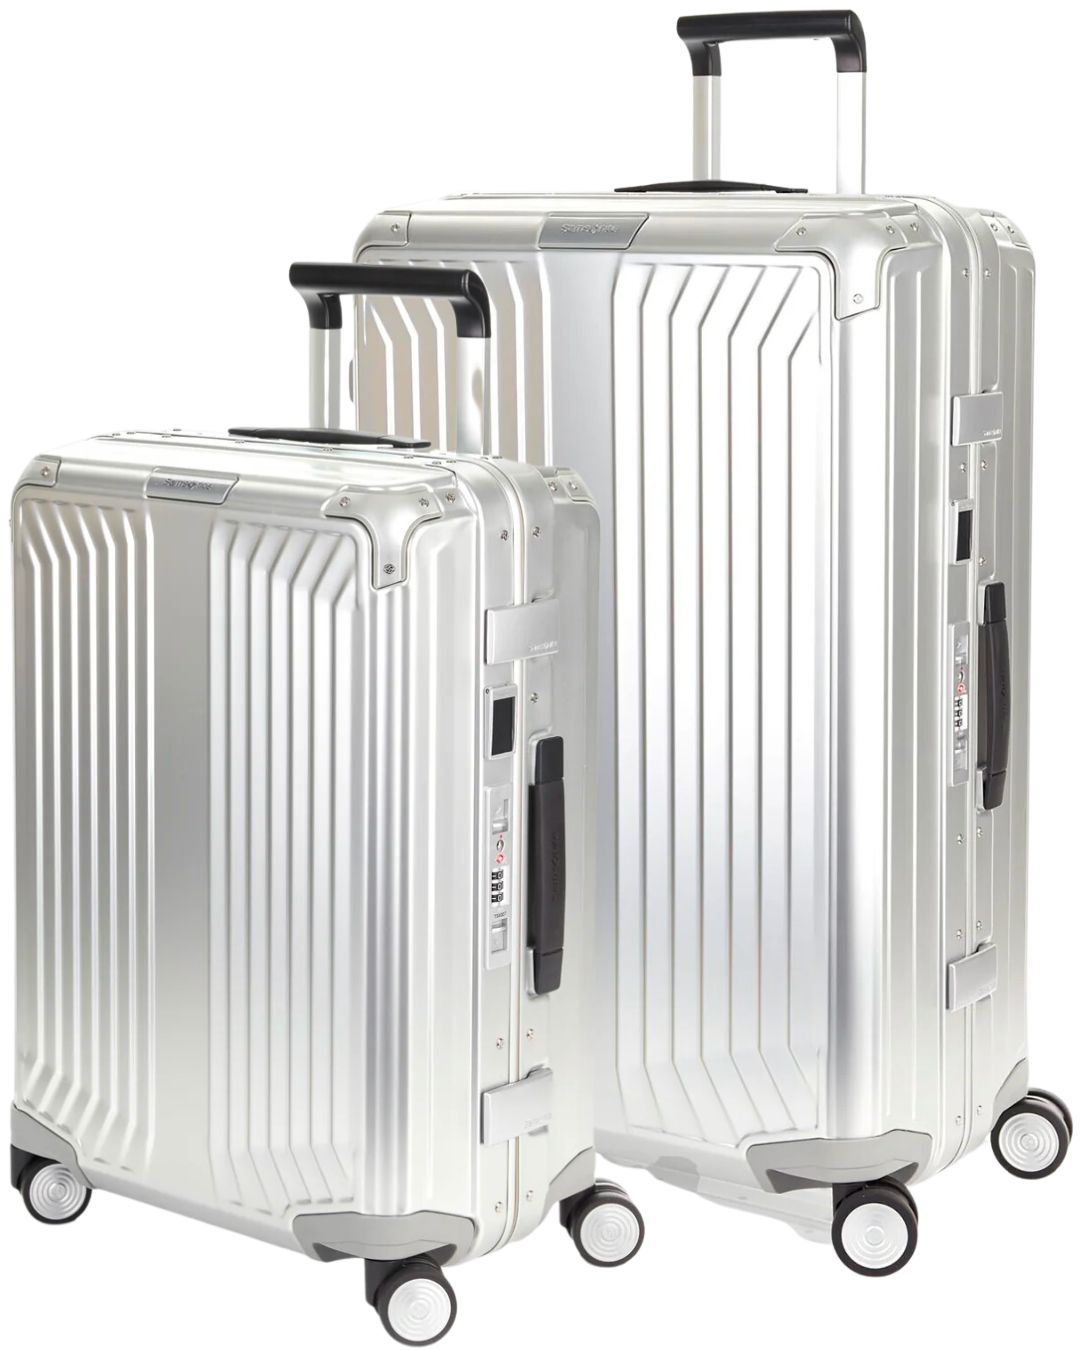 Лучшие комплекты чемоданов, которые вам точно понравятся